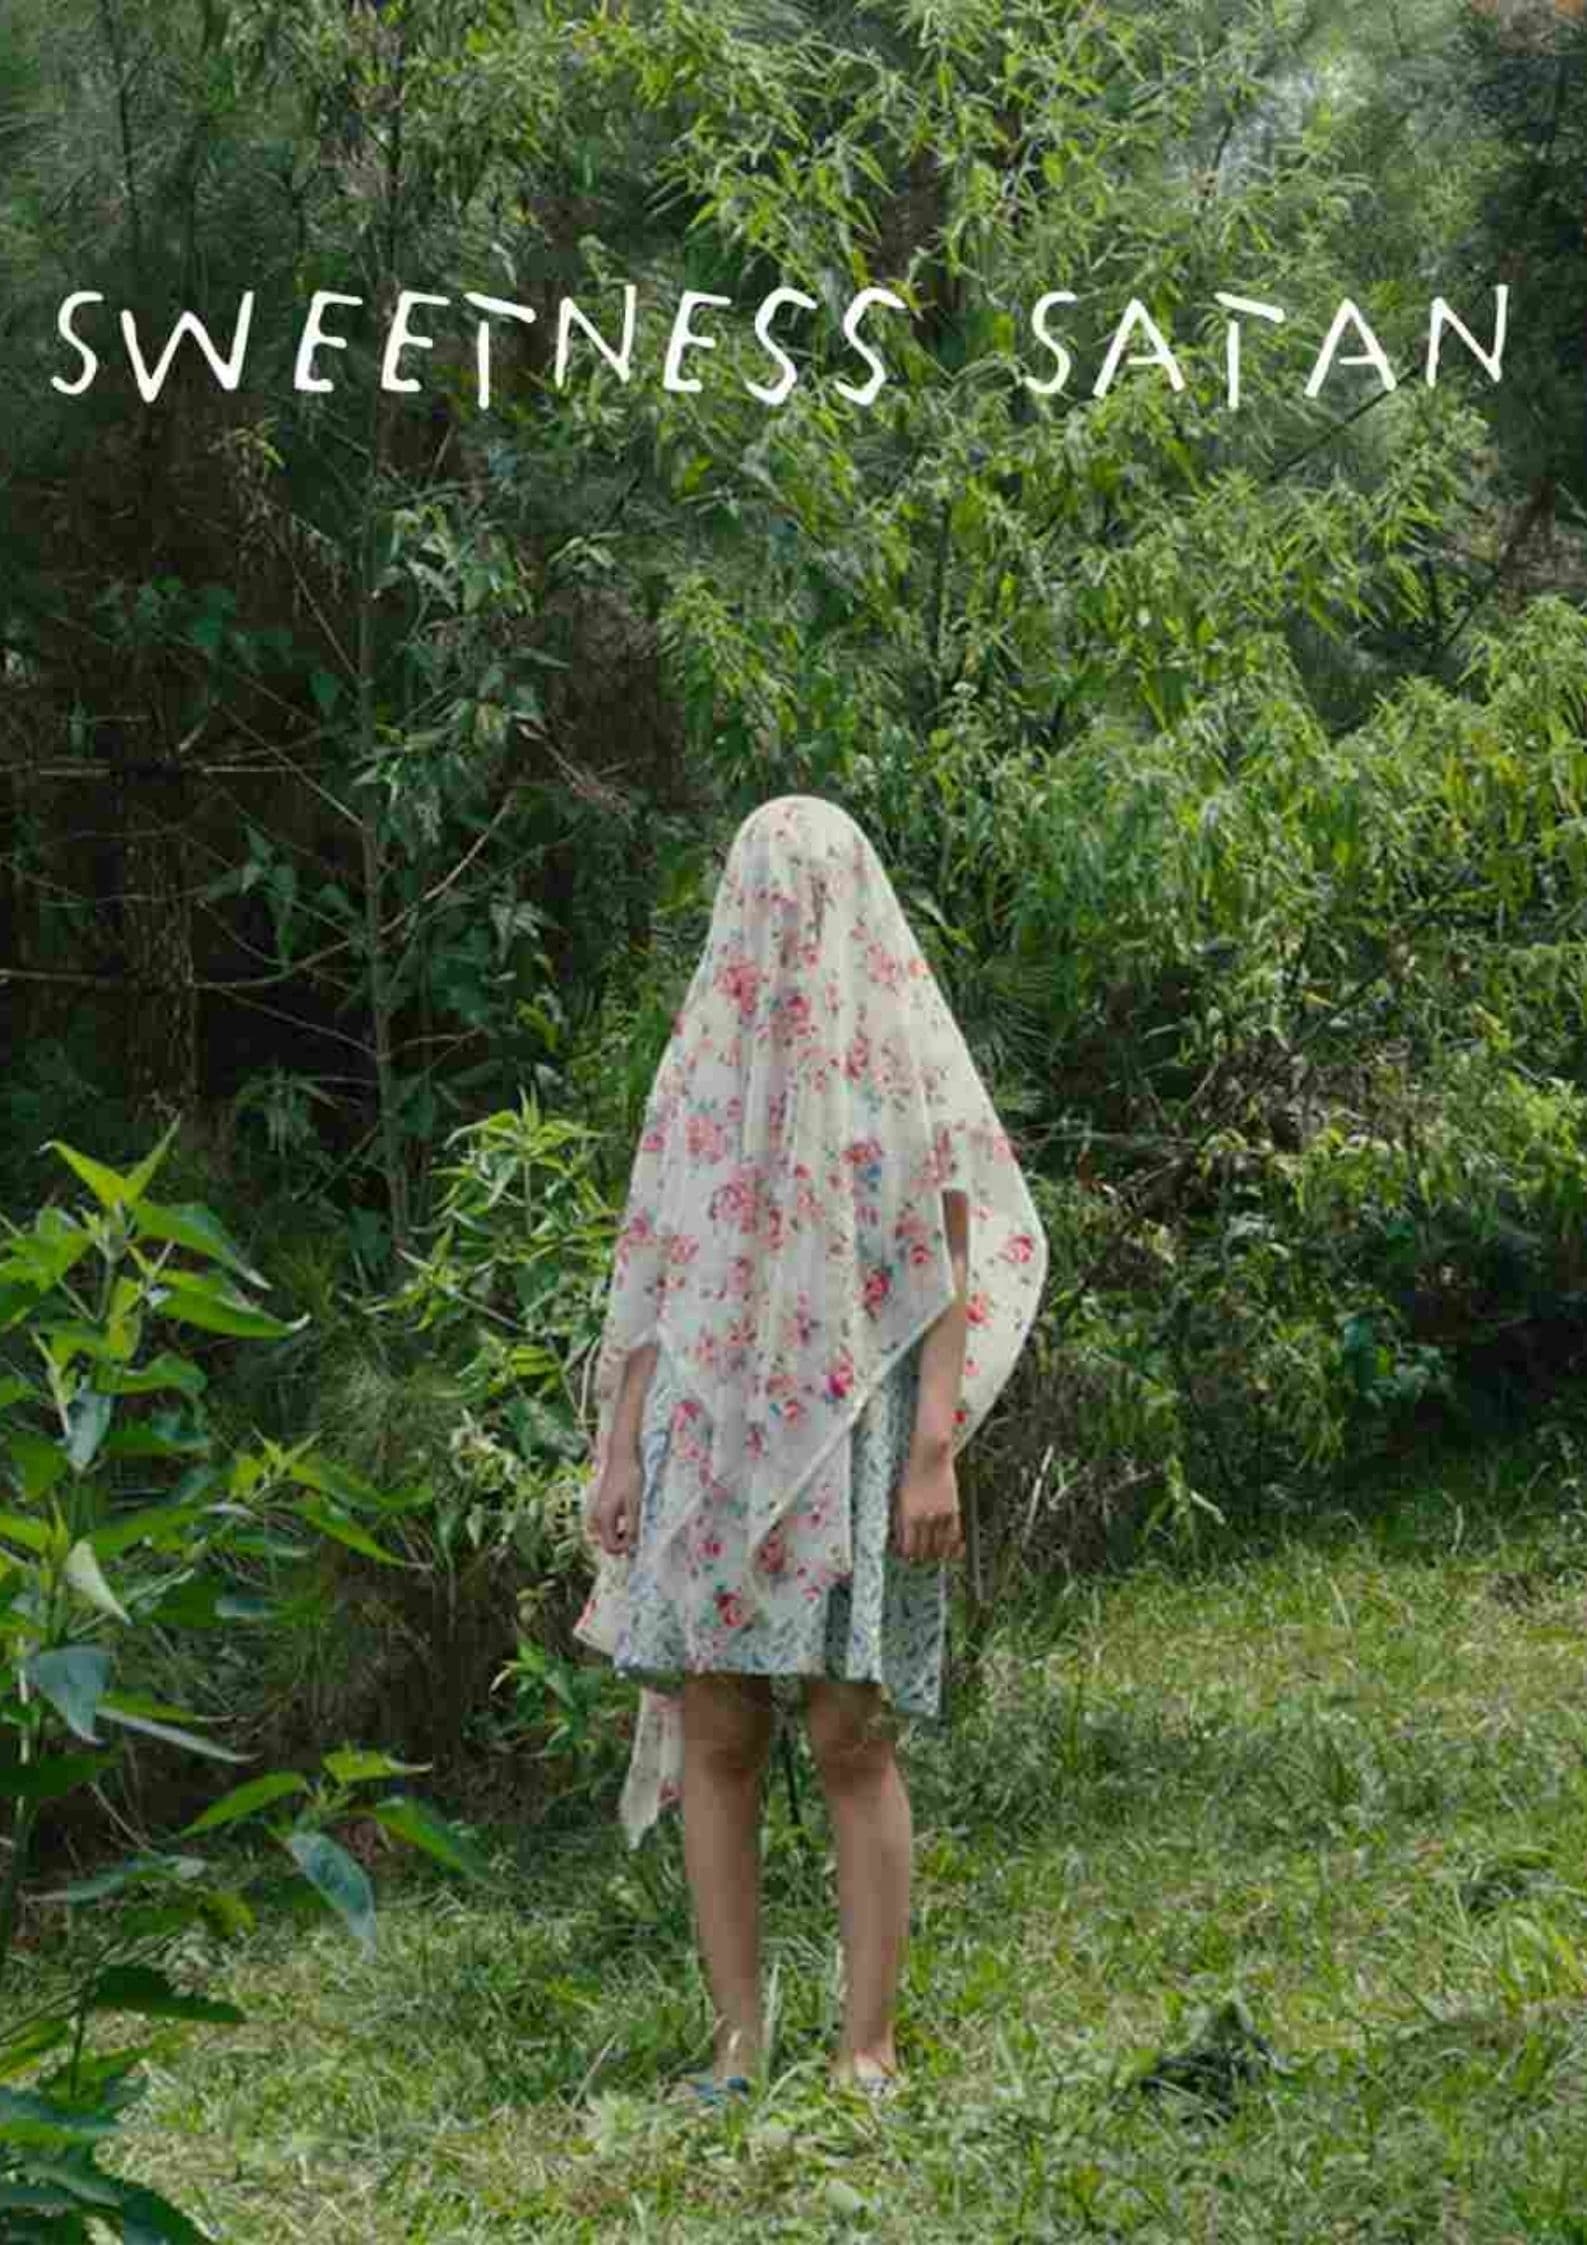 Sweetness Satan